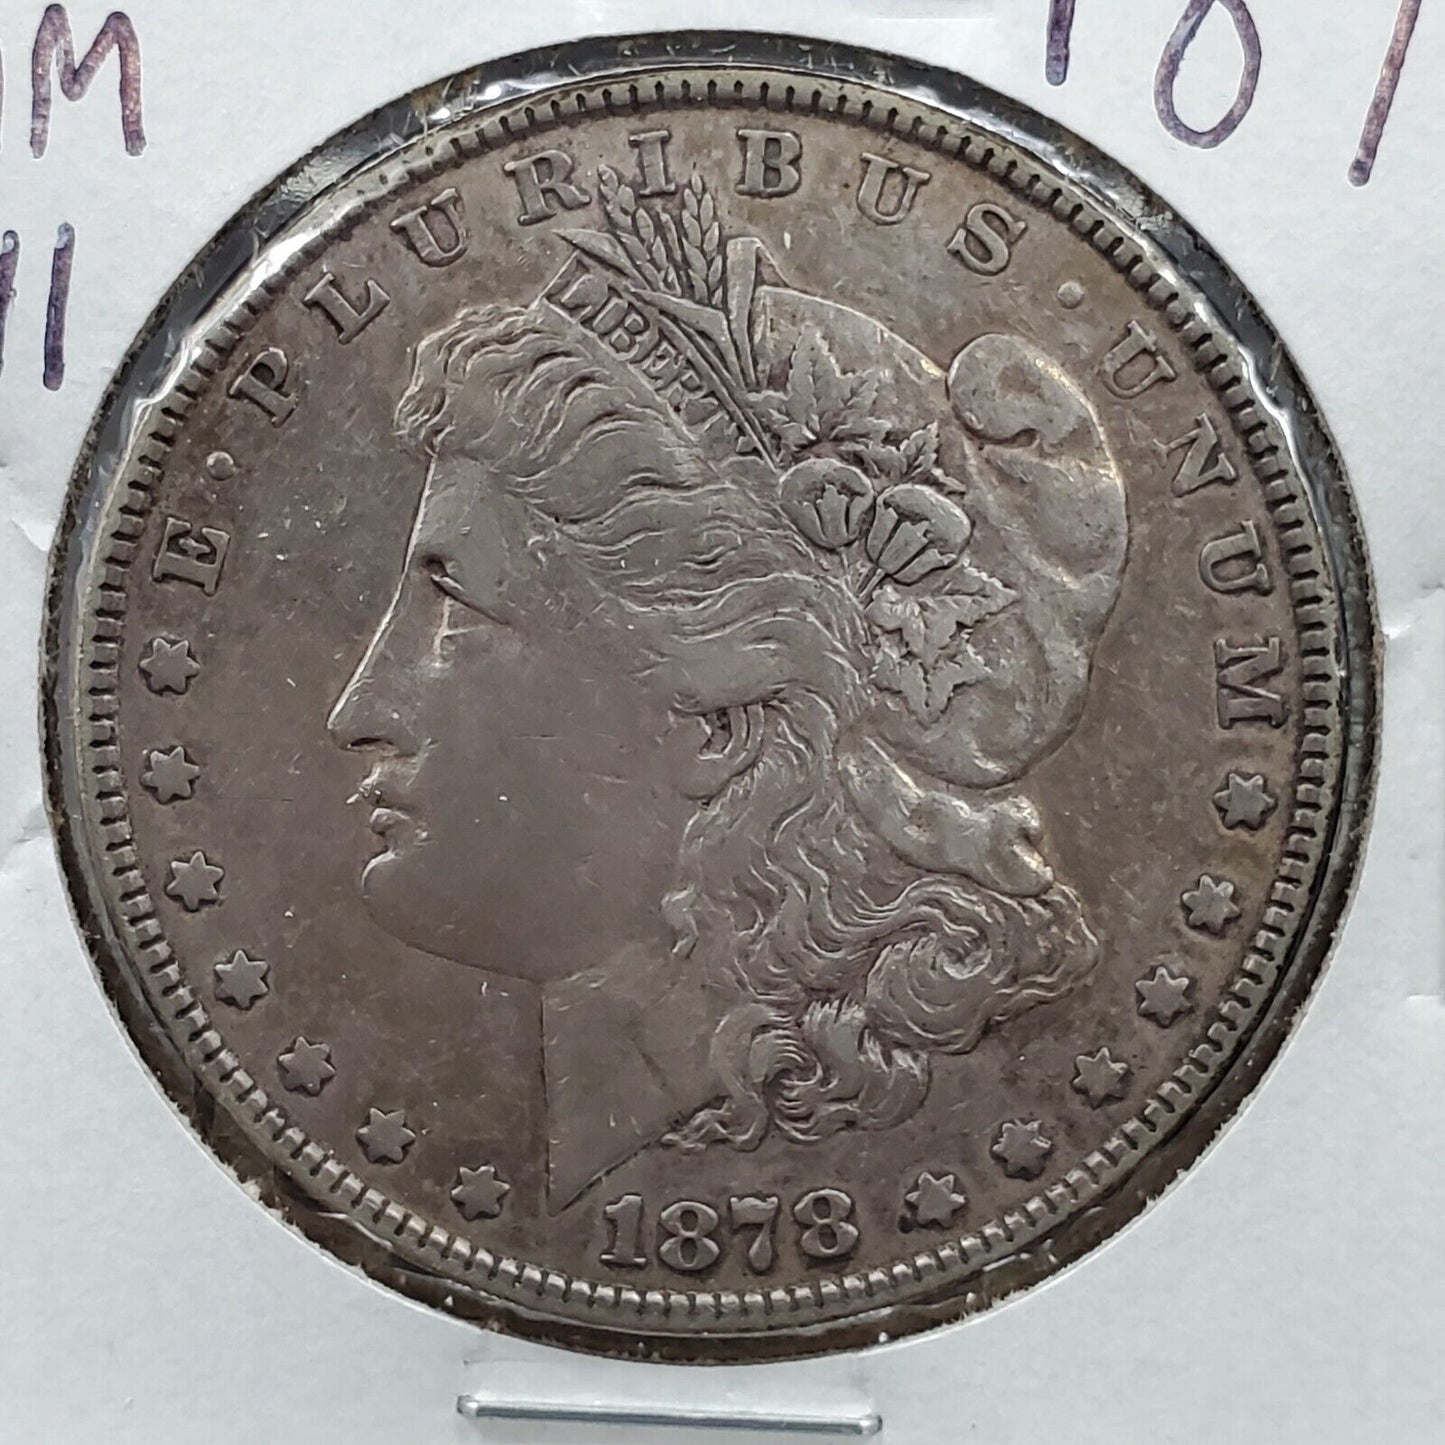 1878 P 7TF REV 78 Morgan Silver Eagle Dollar Coin VAM-141 Choice EF XF Extra Fin